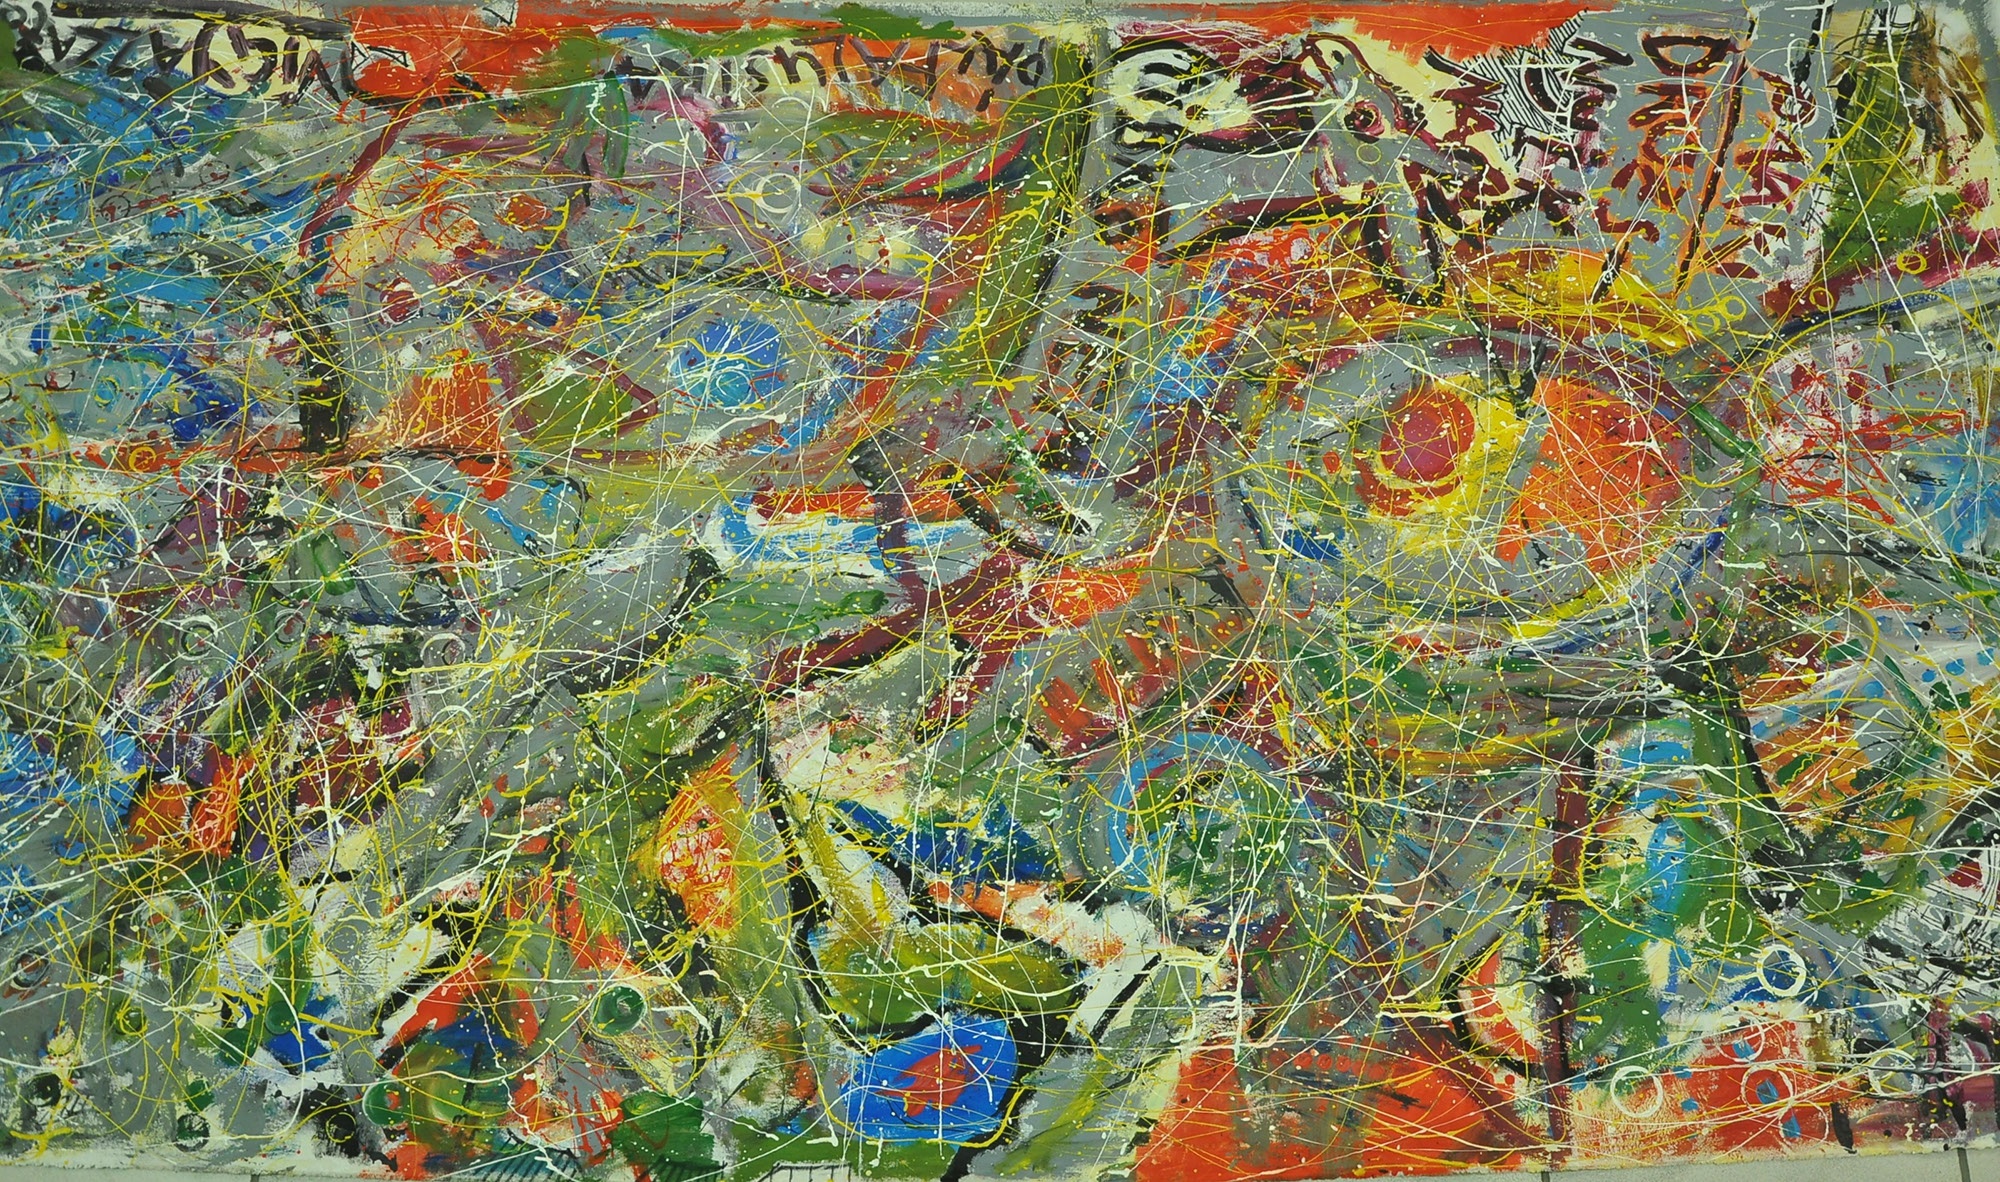 szaloncukor művészei által közösen készített festmény: (Herman Ottó Múzeum, Miskolc CC BY-NC-SA)